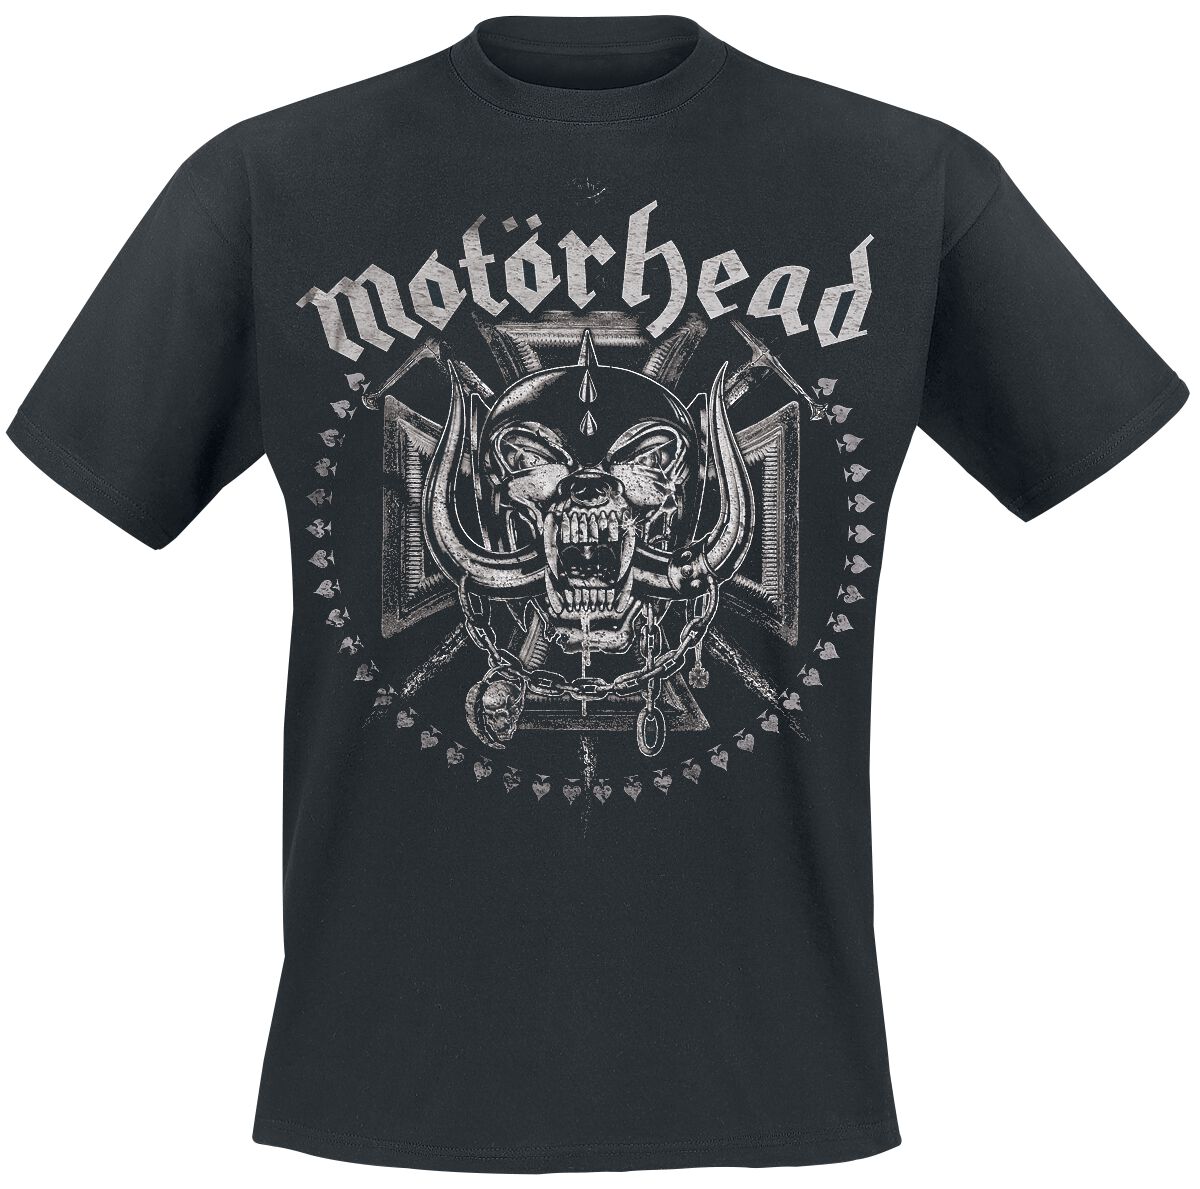 Motörhead T-Shirt - Iron Cross Swords - M bis XXL - für Männer - Größe L - schwarz  - EMP exklusives Merchandise!